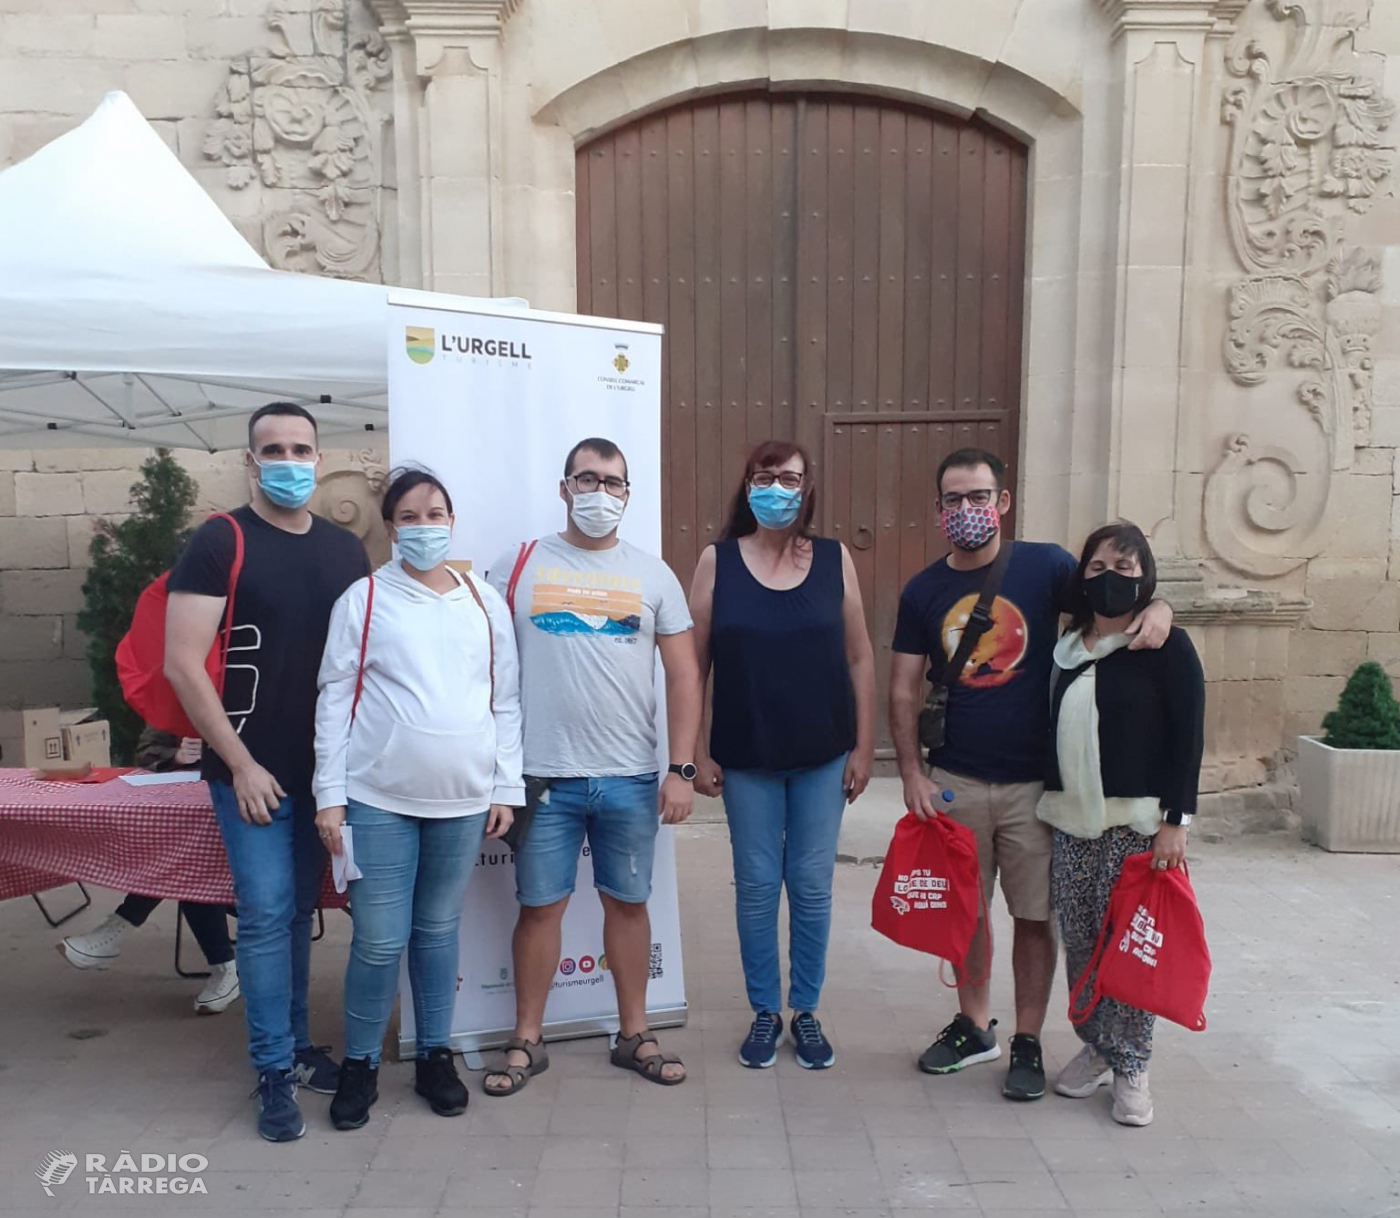 Més de 200 persones participen al Gastrosarau Benvinguts a l’Urgell